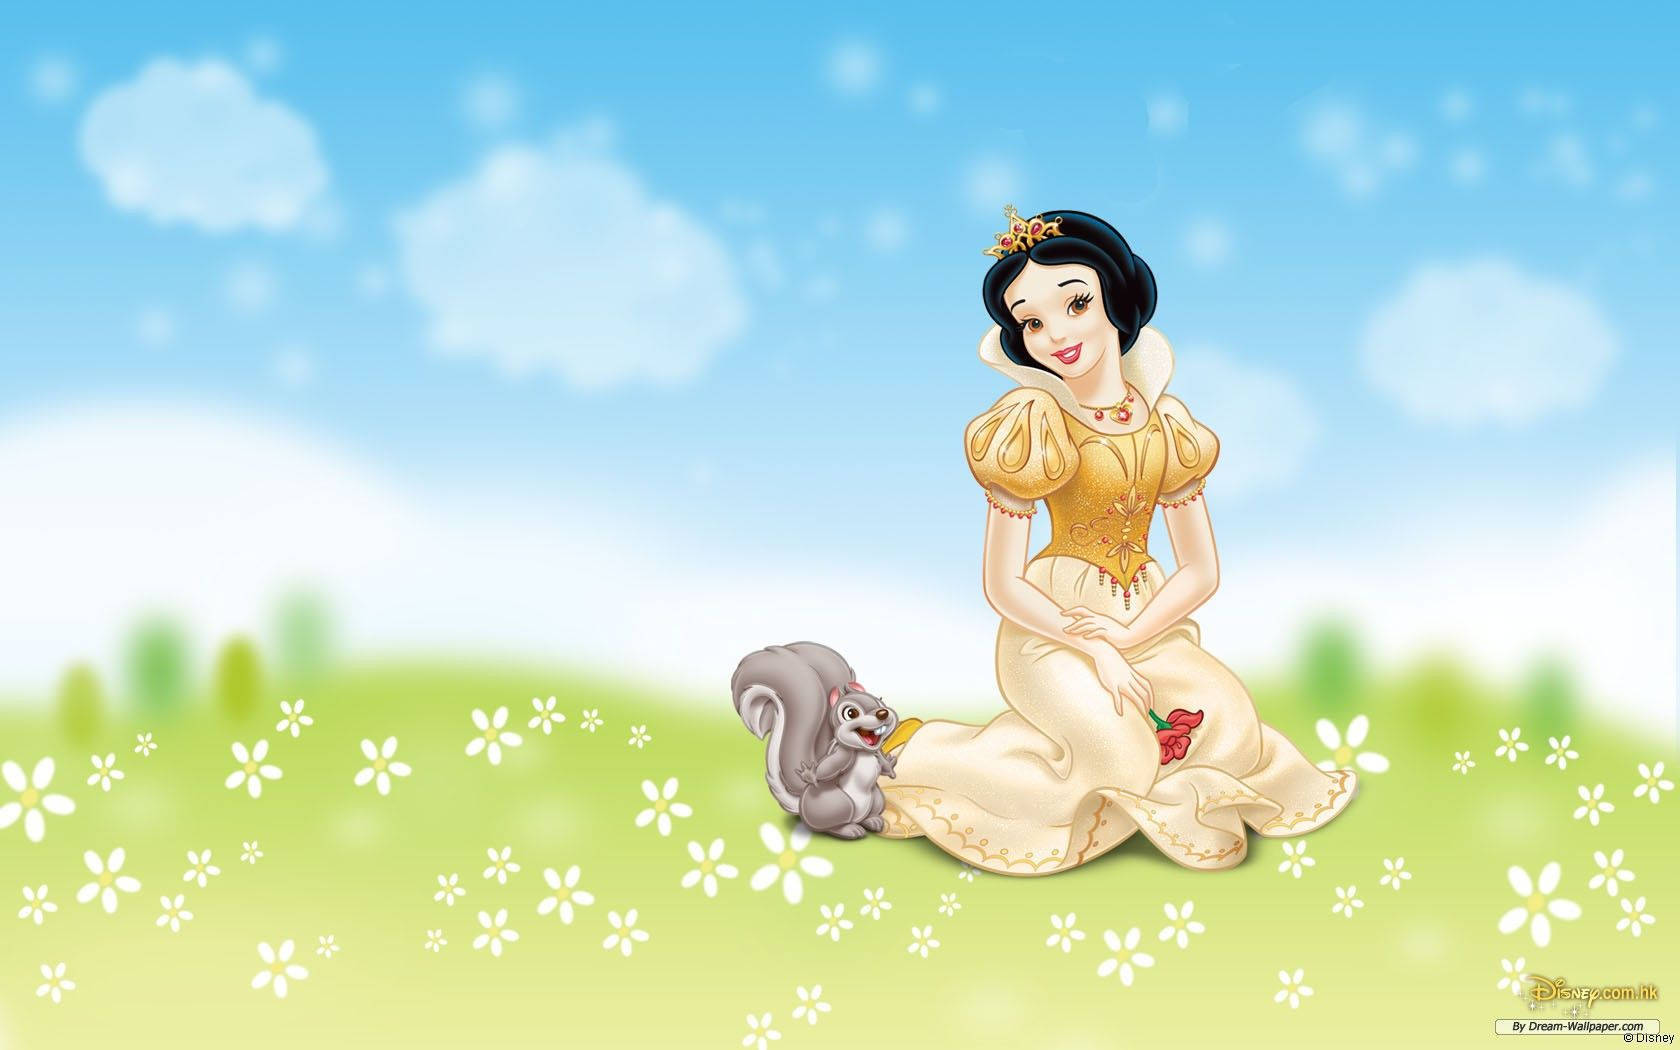 Cute Cartoon Princess Snow White Wallpaper